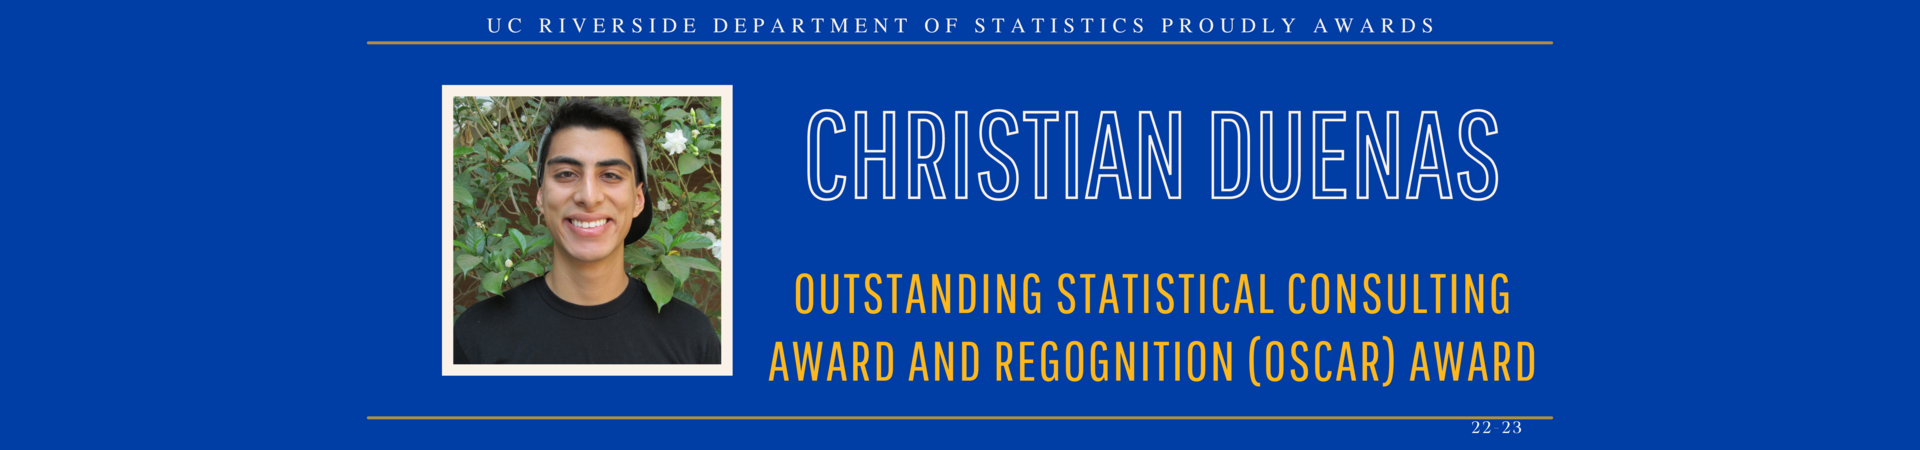 Christian Duenas awarded OSCAR award